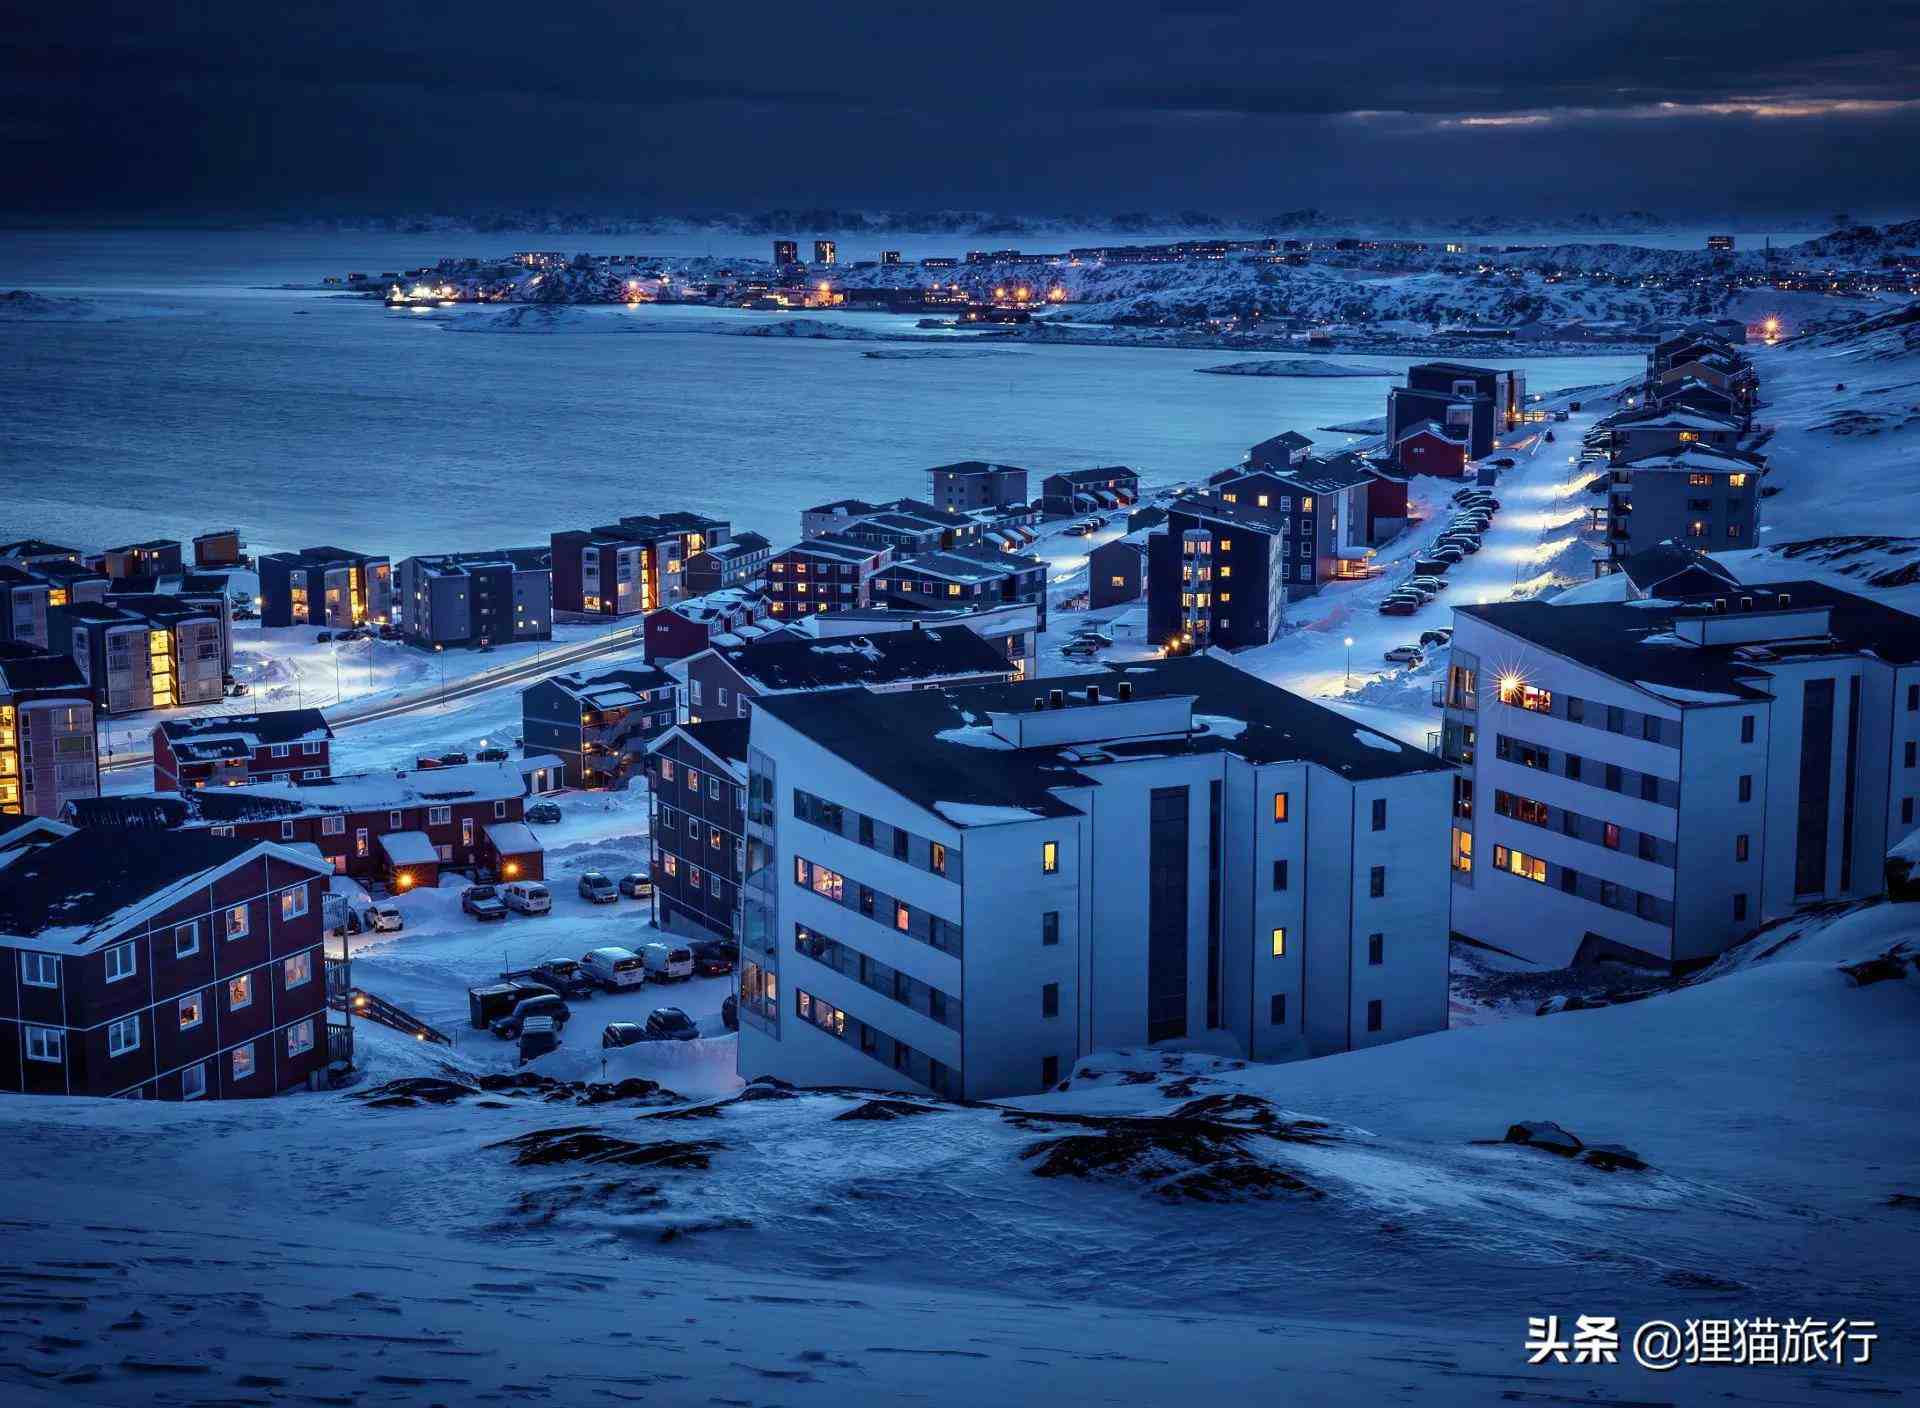 世界最大岛屿格陵兰岛,首府努克只有1万多人口,却是最大的城市